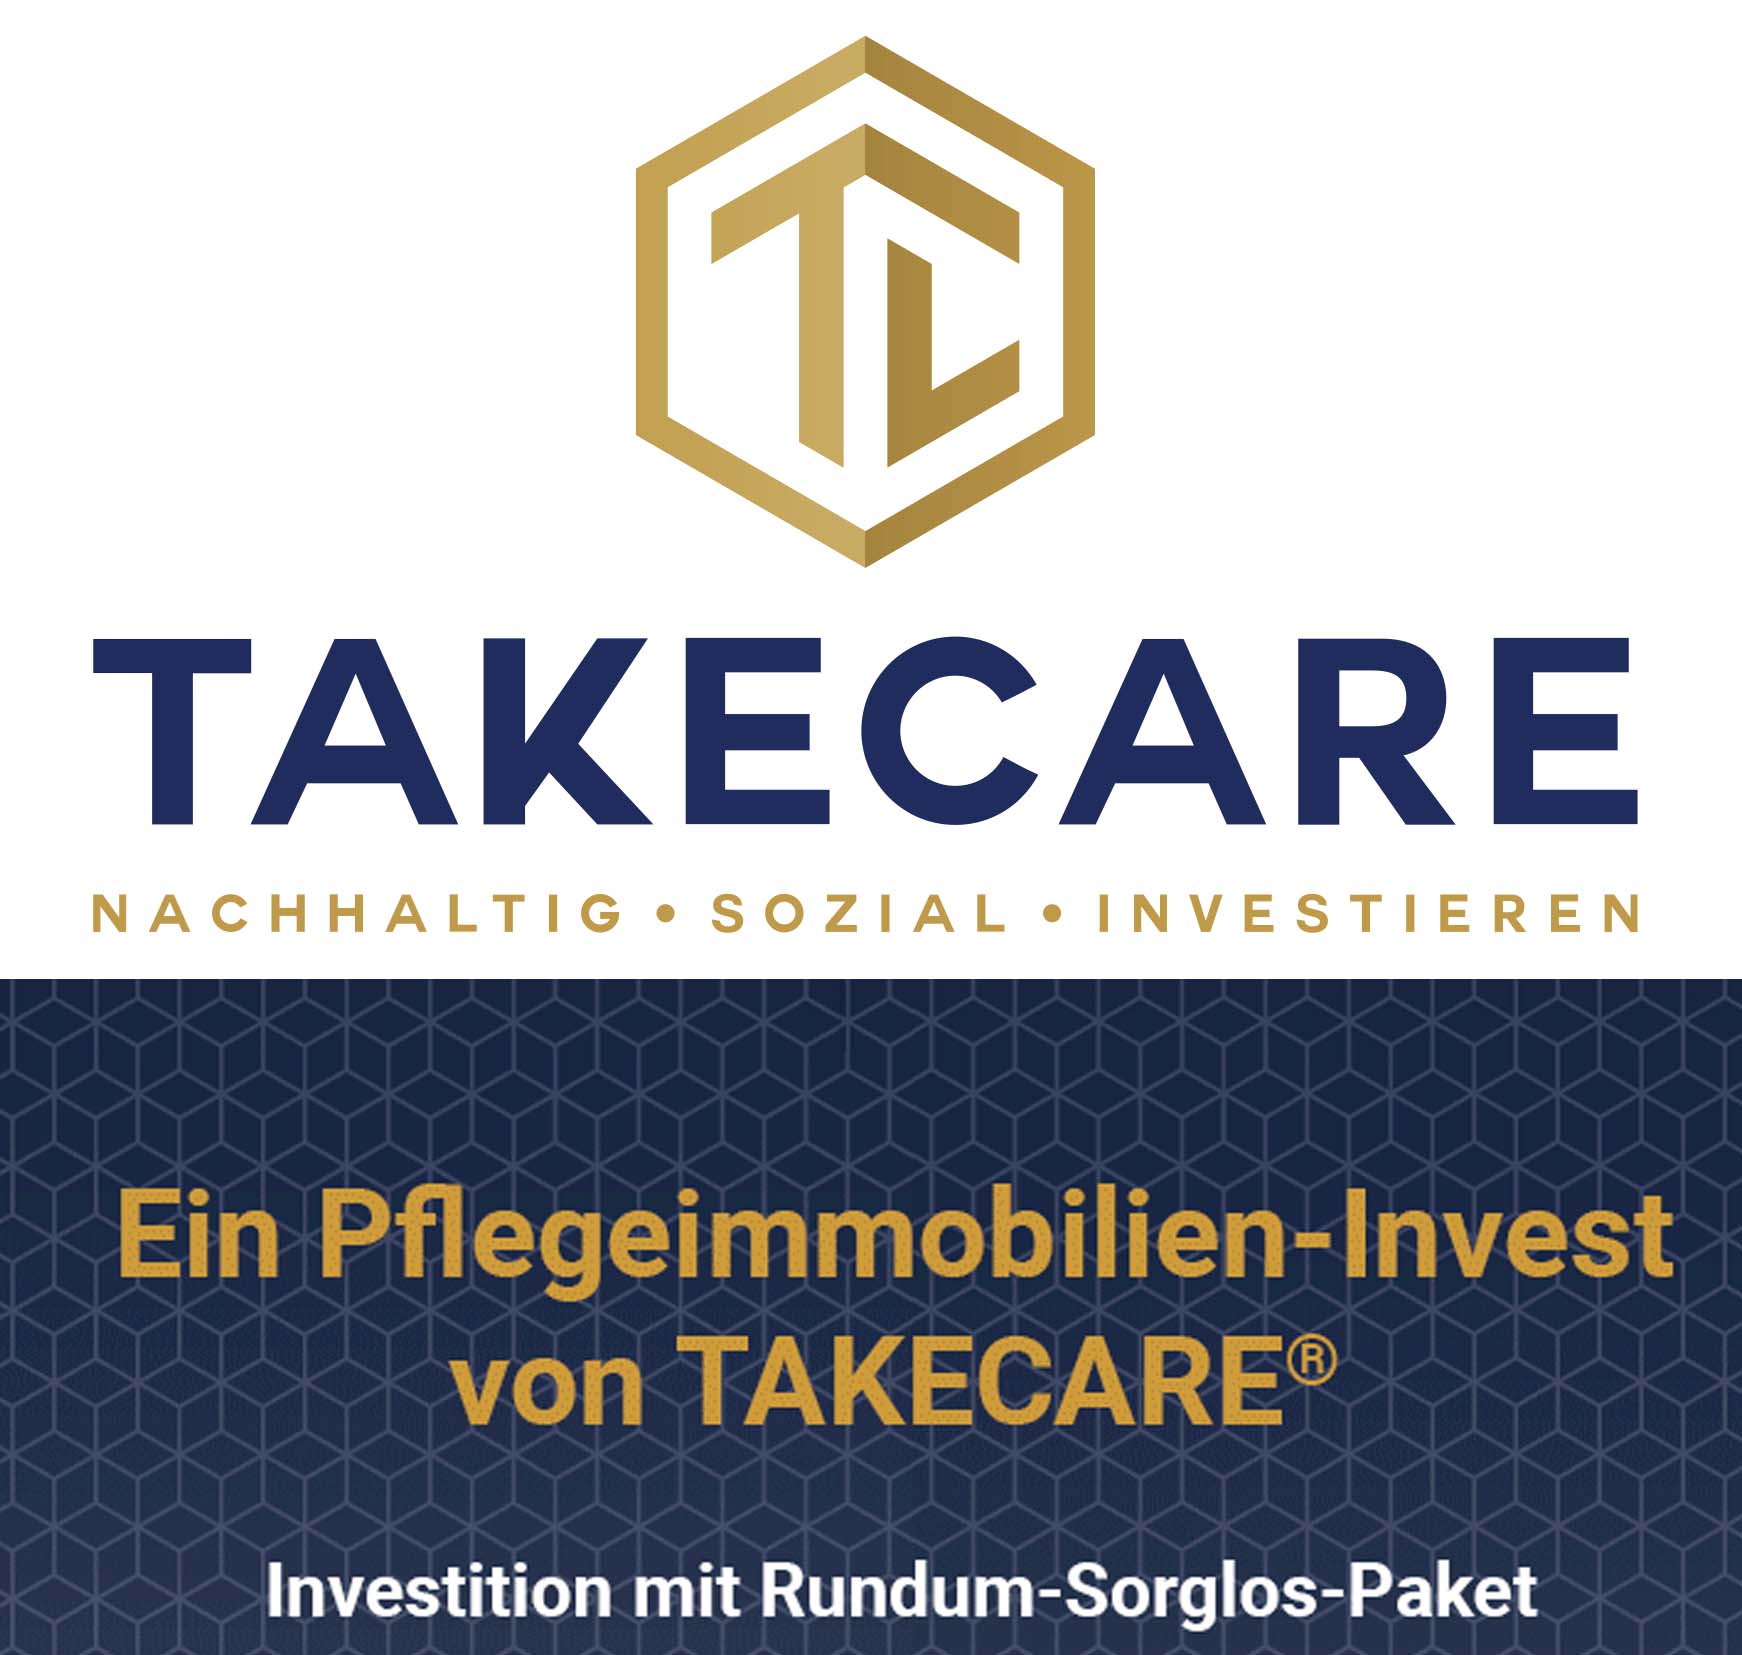 www.takecare.de